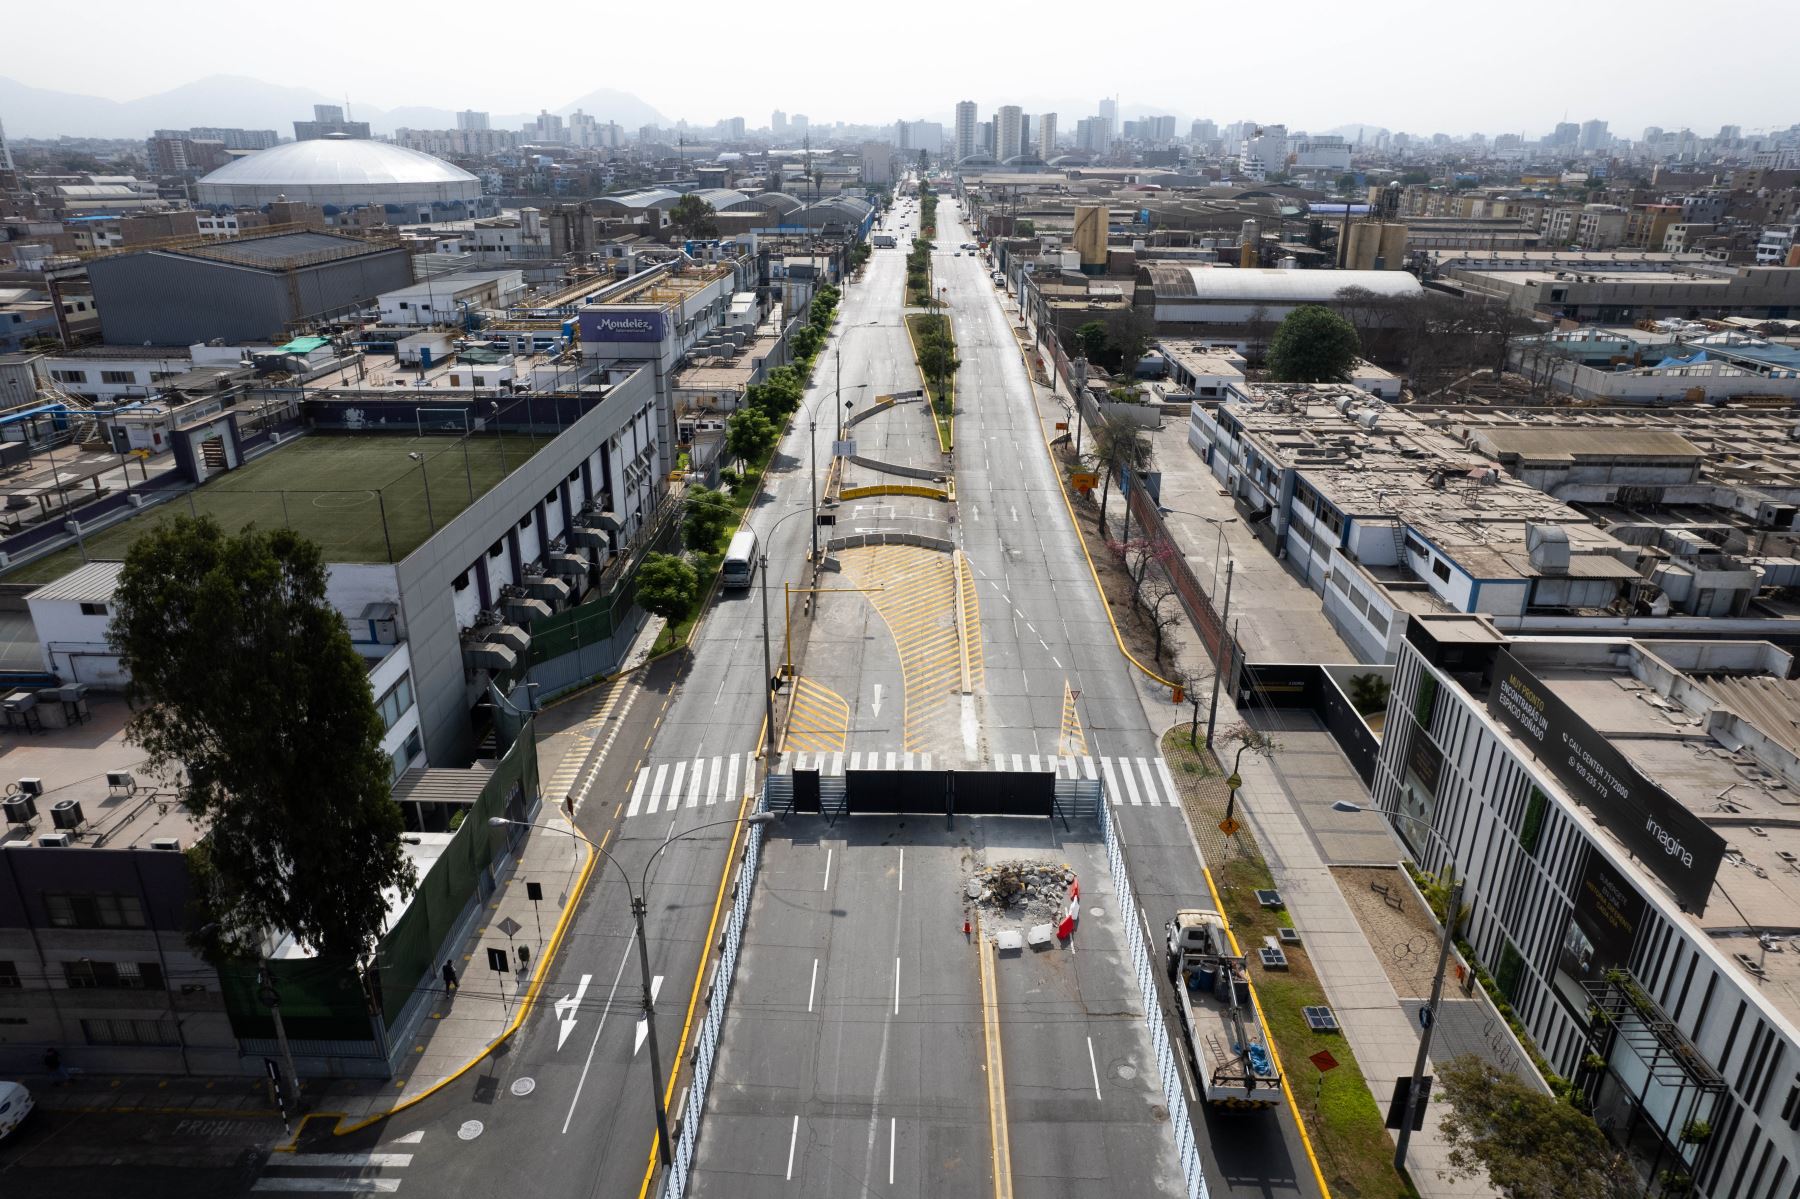 Inició el plan de desvíos de vehículos de transporte público y privado en la Av. Venezuela, debido a las obras de construcción de estaciones de la Línea 2 del Metro de Lima.  Foto: ANDINA/Daniel Bracamonte